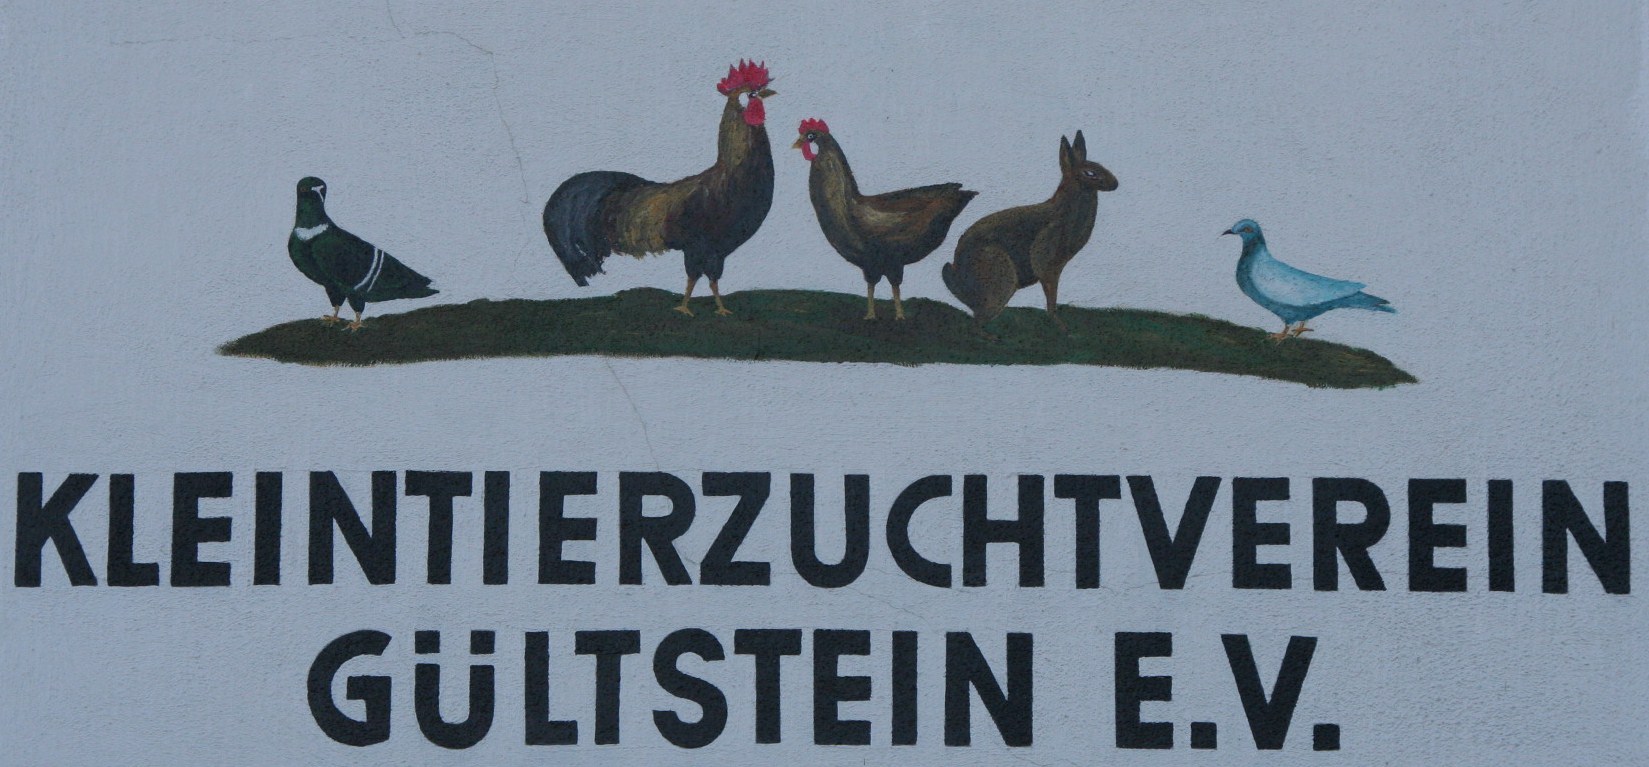 Kleintierzuchtverein Gültstein